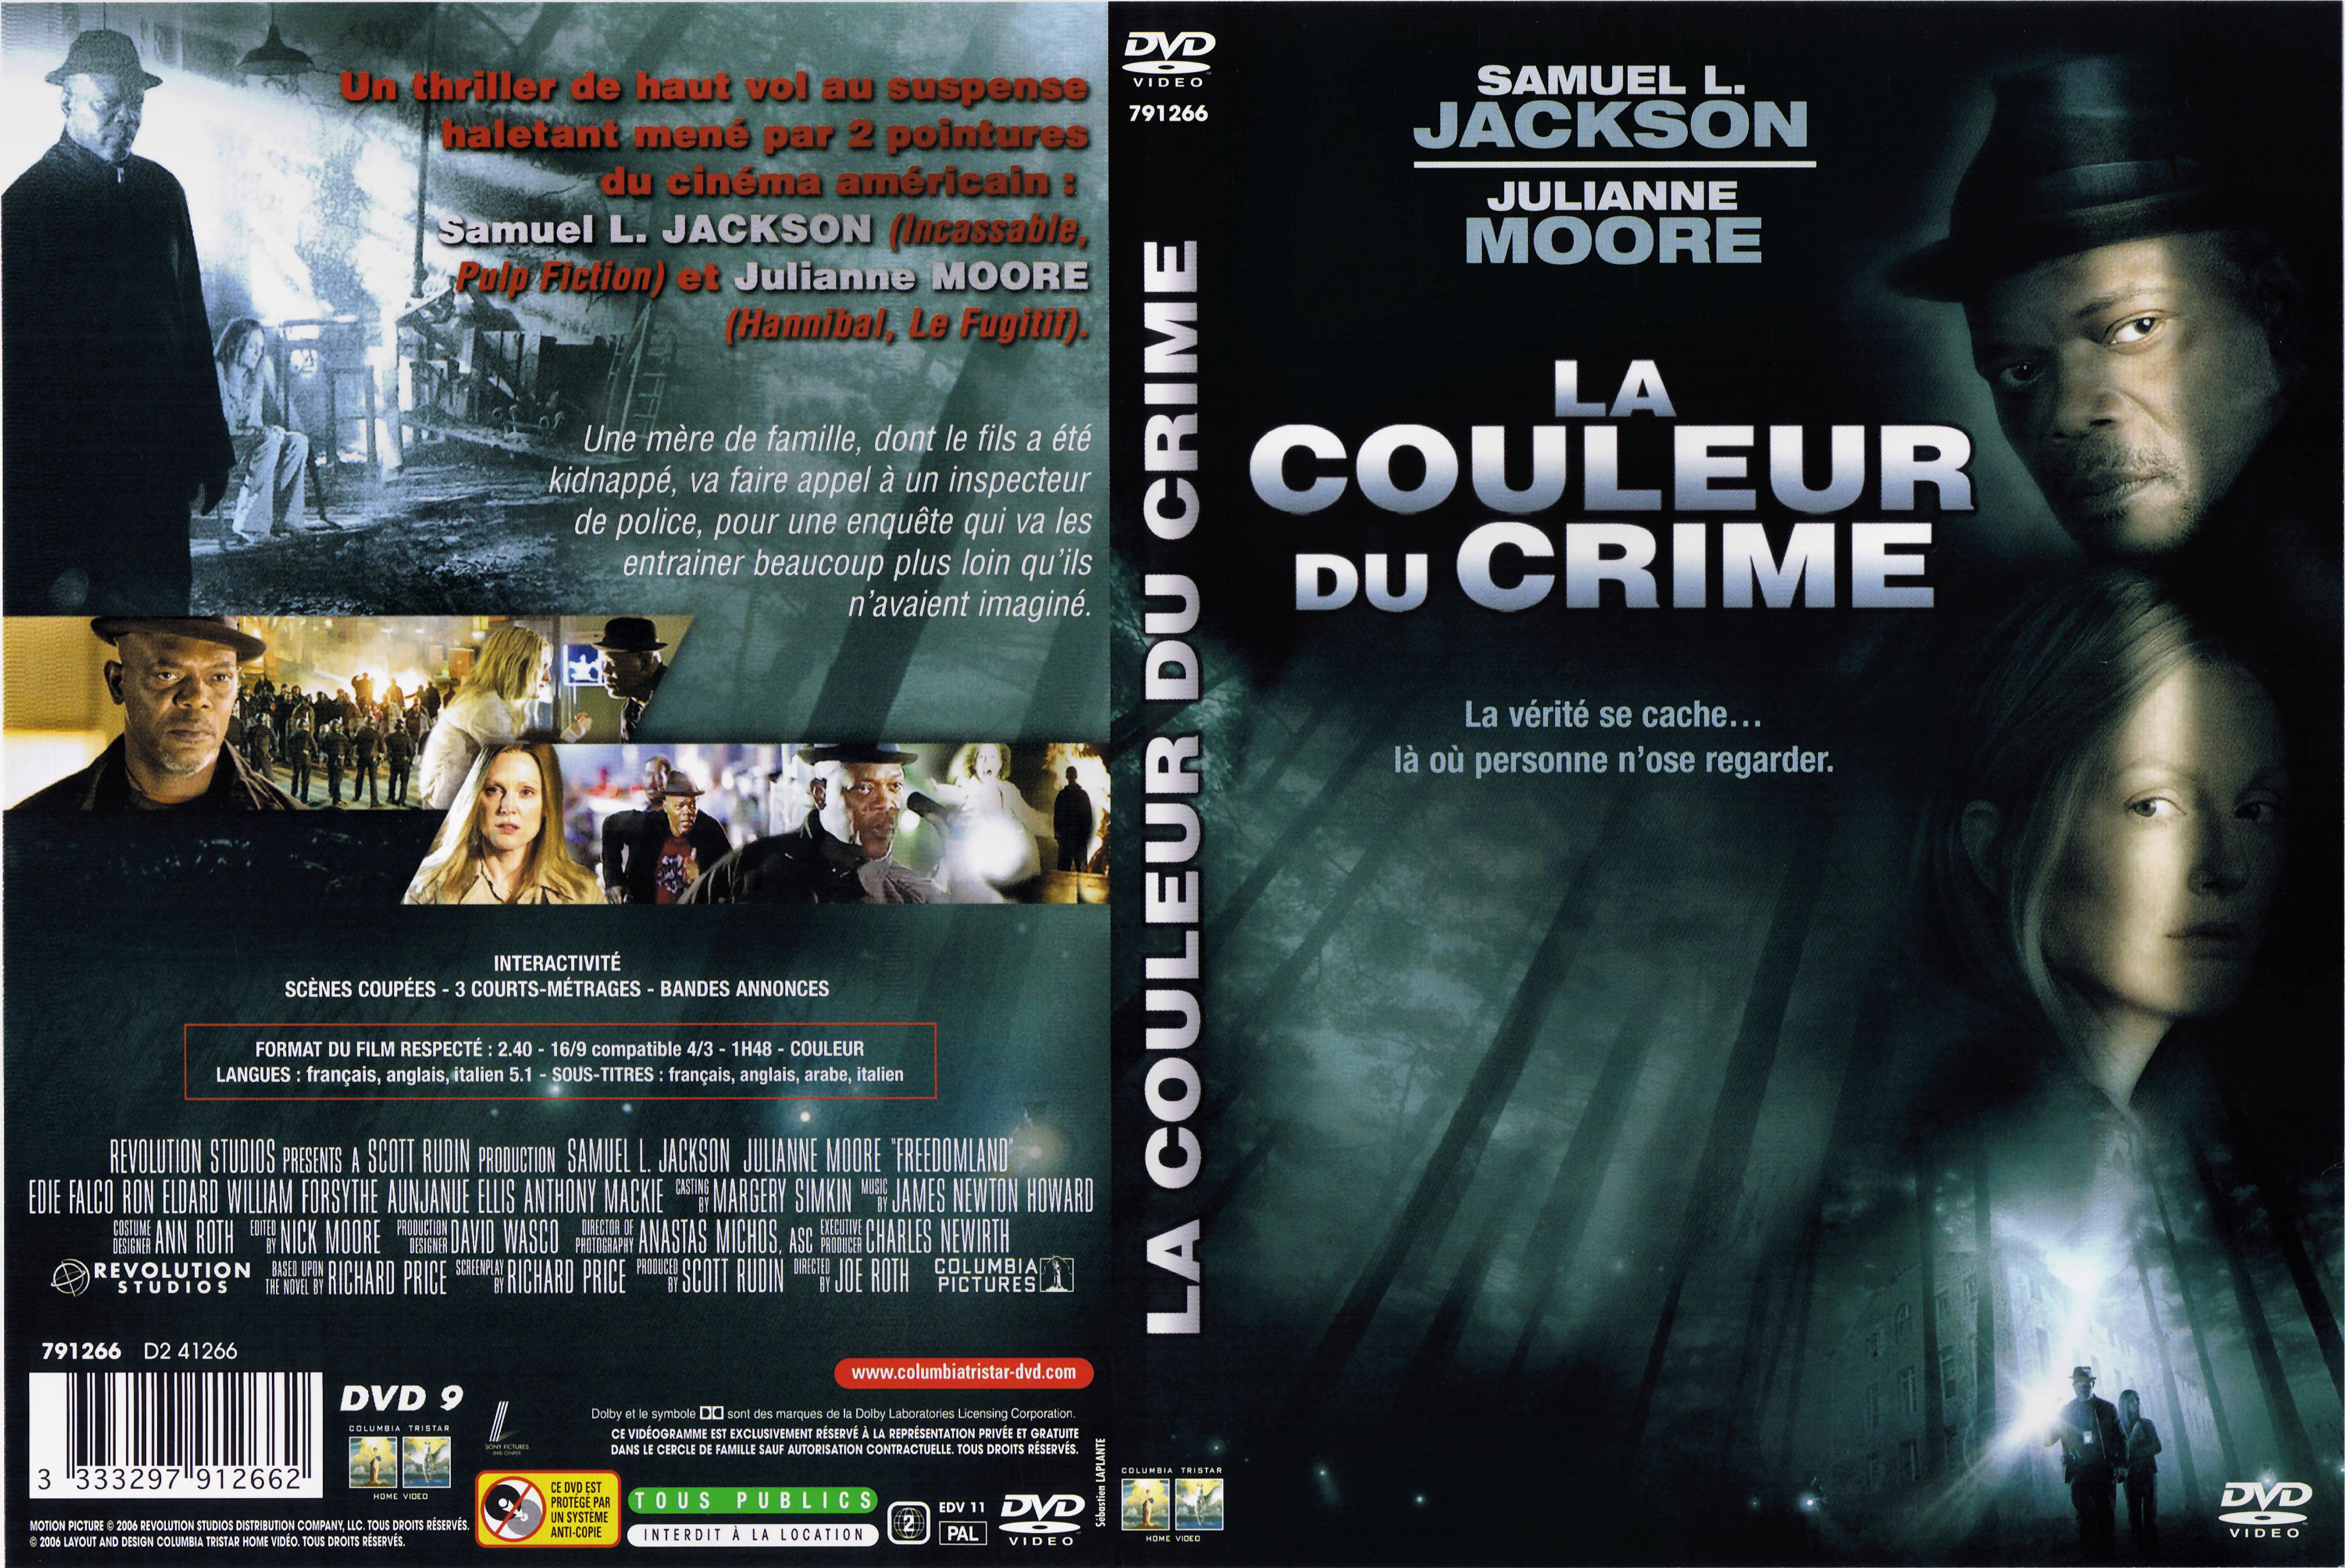 Jaquette DVD La couleur du crime v2